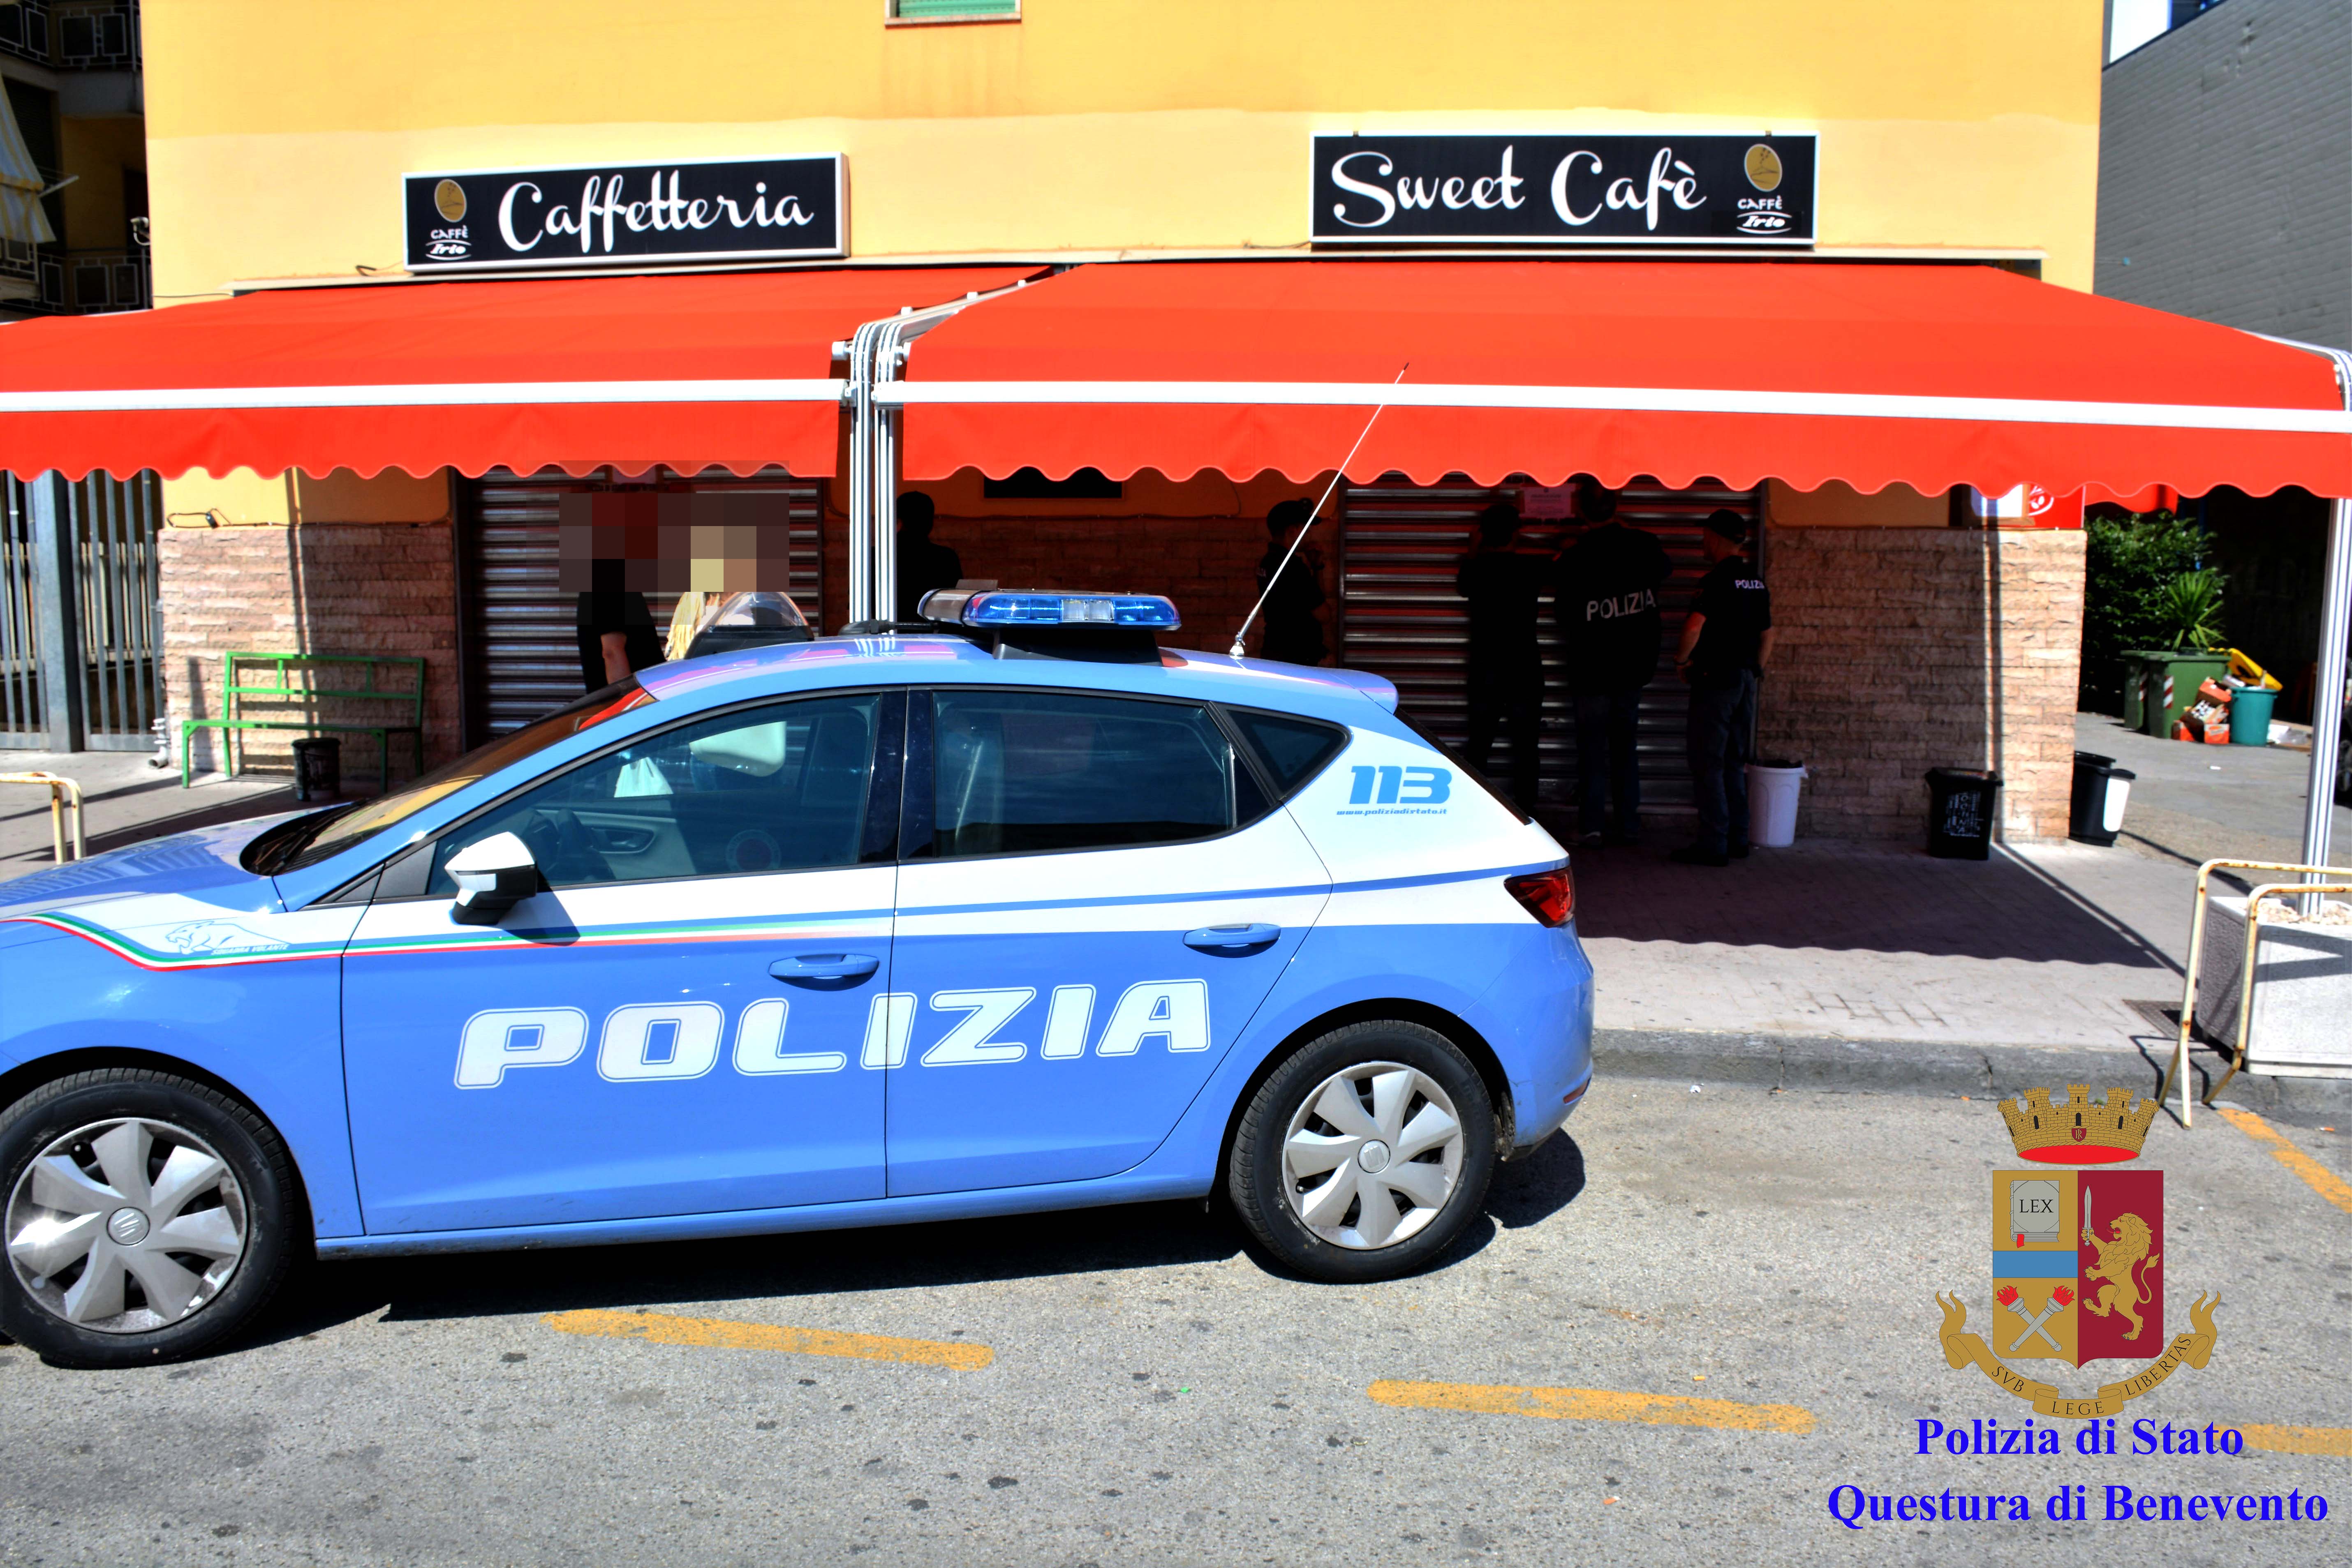 Benevento| Sweet Cafè, Polizia sospende attività per un mese